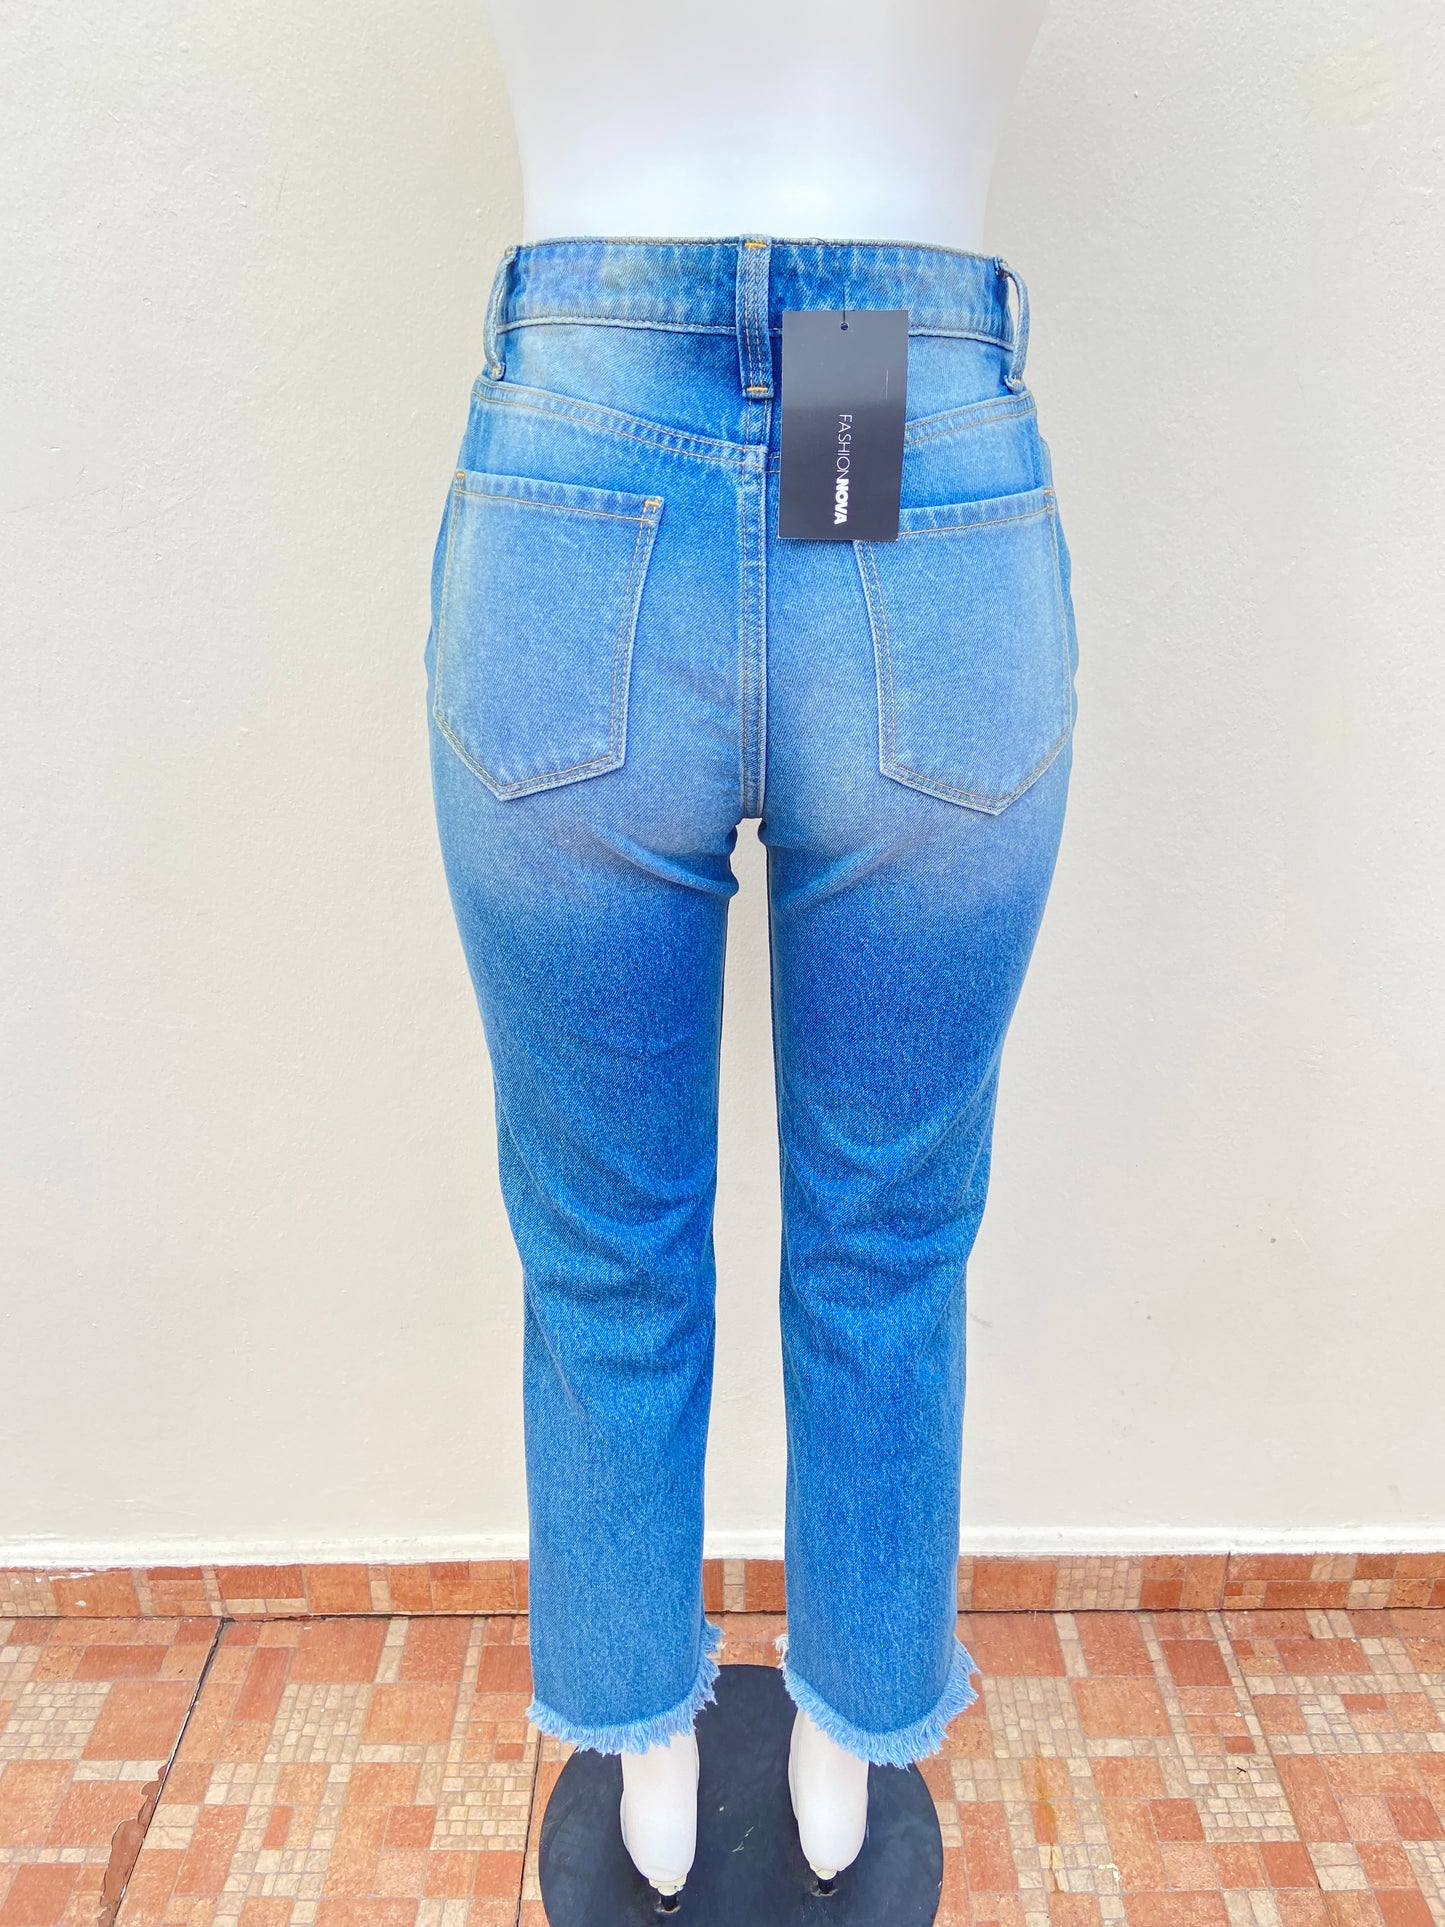 Pantalón jeans Fashion Nova original color azul con rasgados